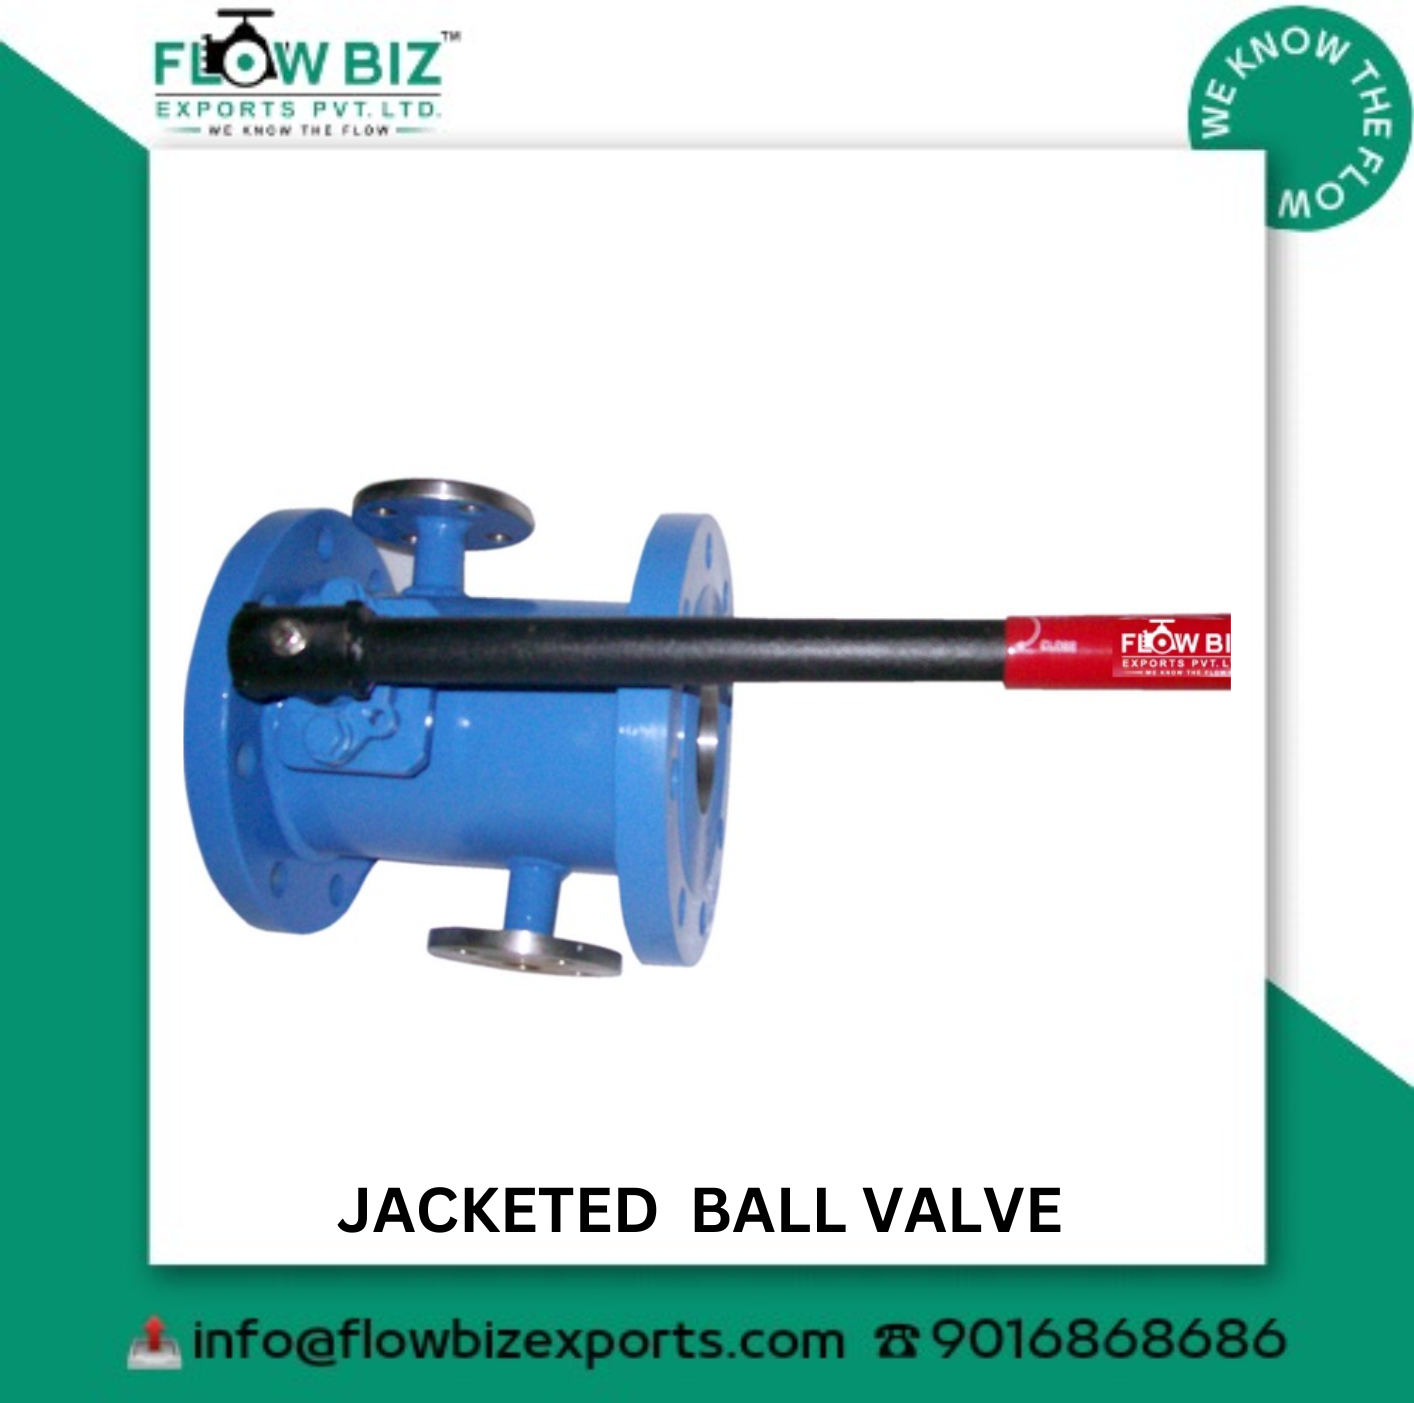 jacketed ball valve manufacturer pune - Flowbiz